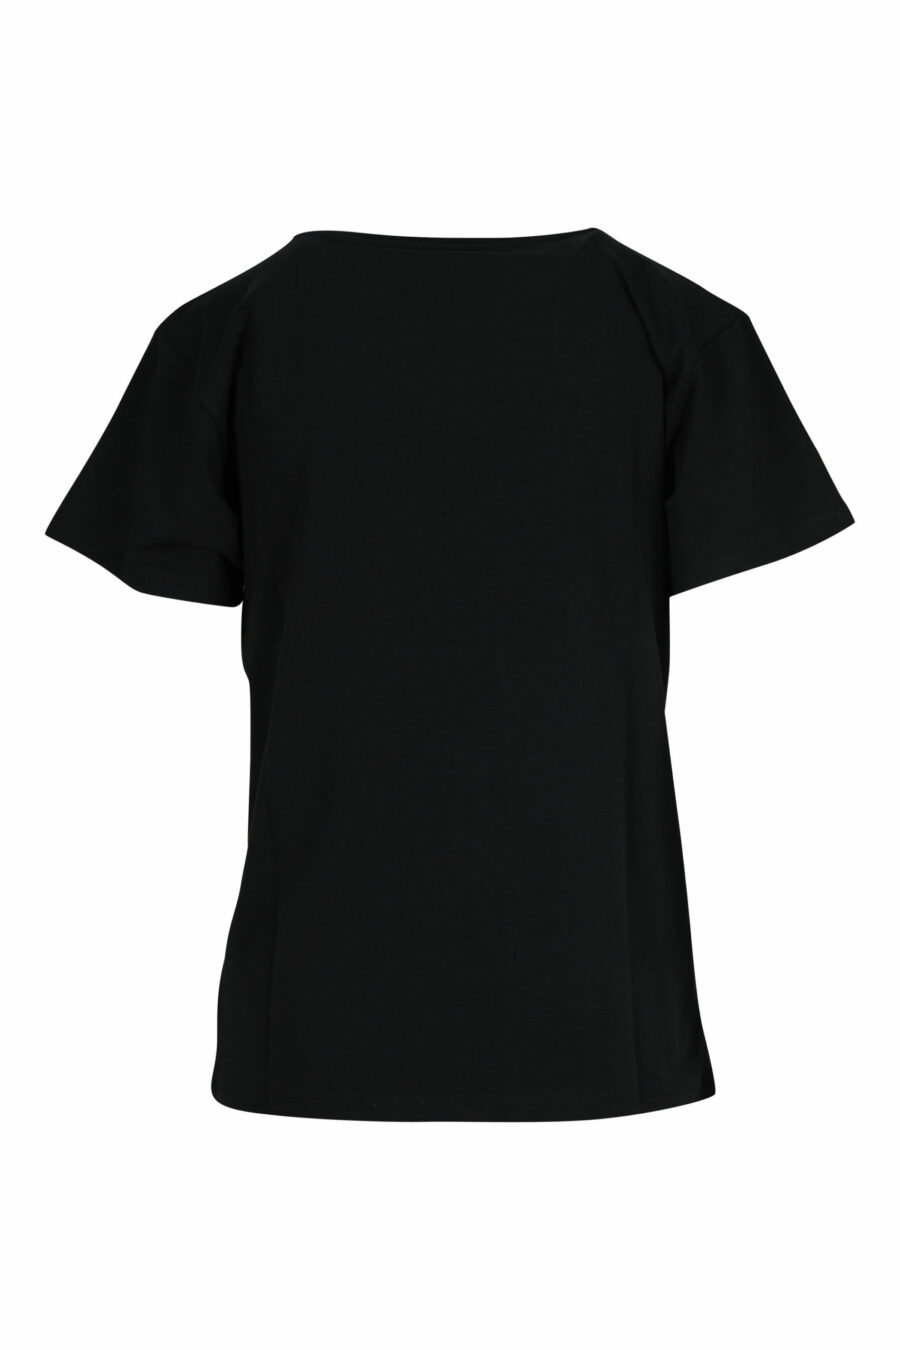 Schwarzes T-Shirt mit weißem Bären-Minilogo - 667113355306 1 skaliert